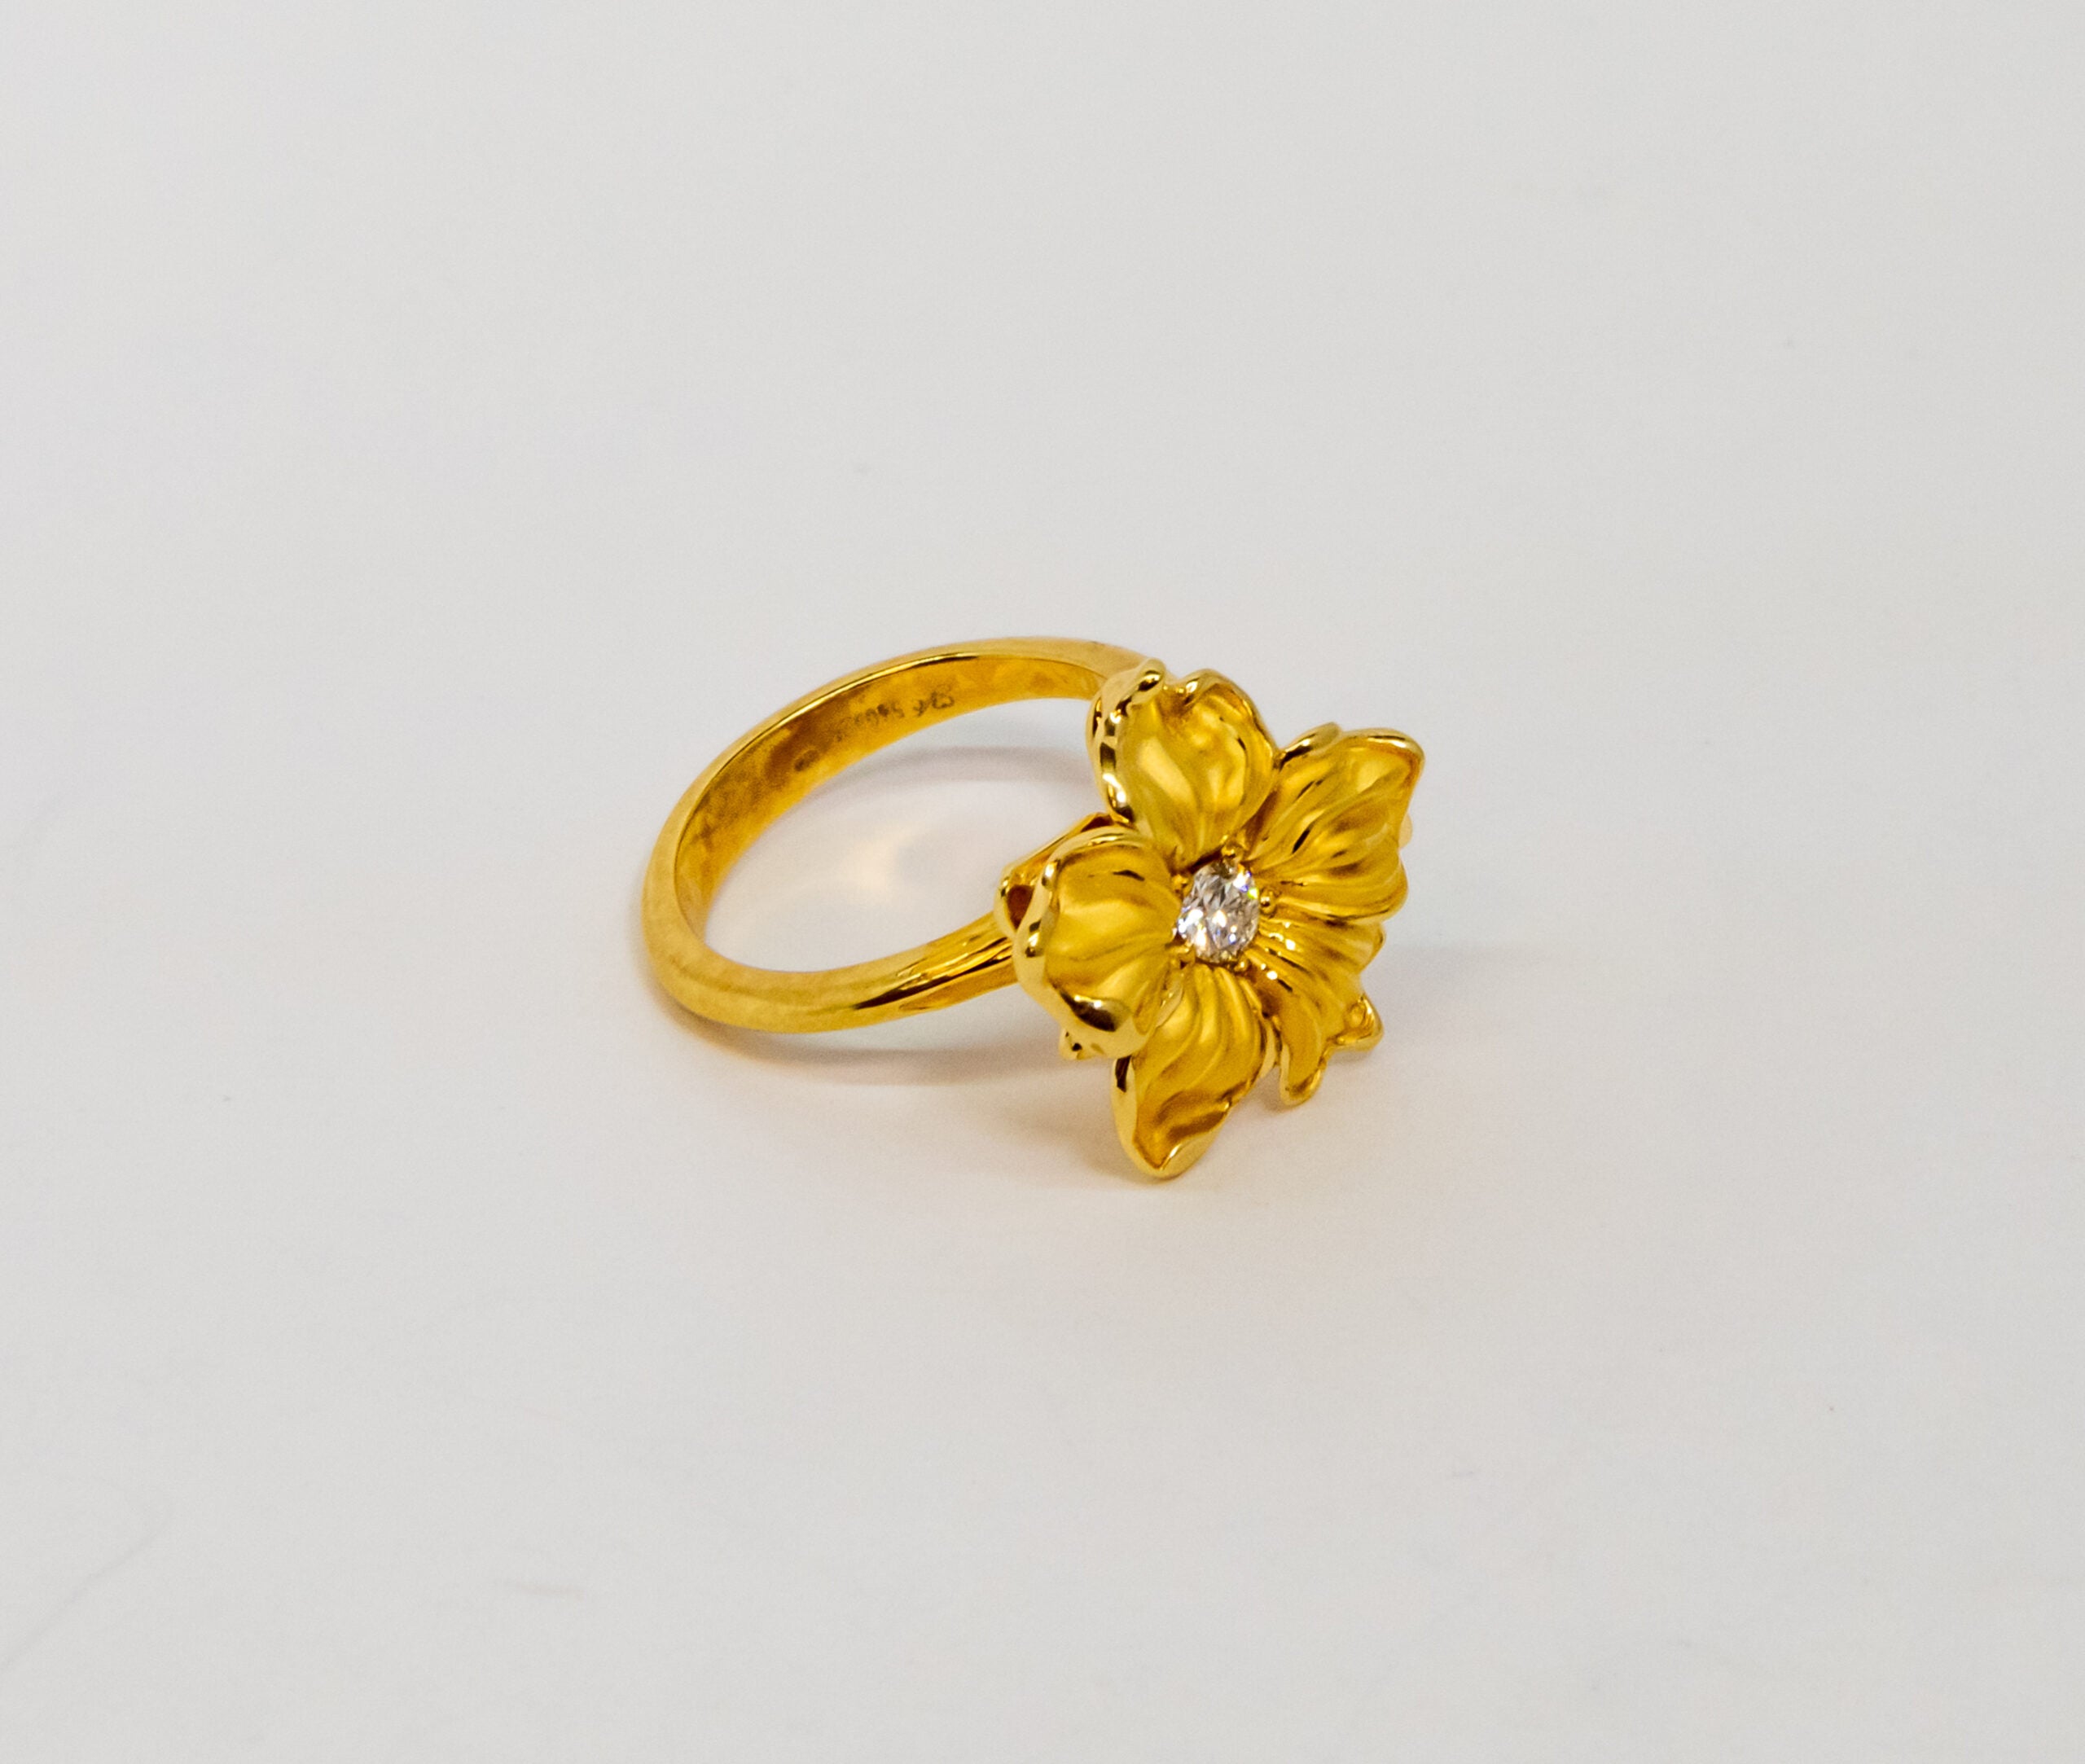 Carrera Y Carrera Emperatriz 18K Yellow Gold Diamond Ring